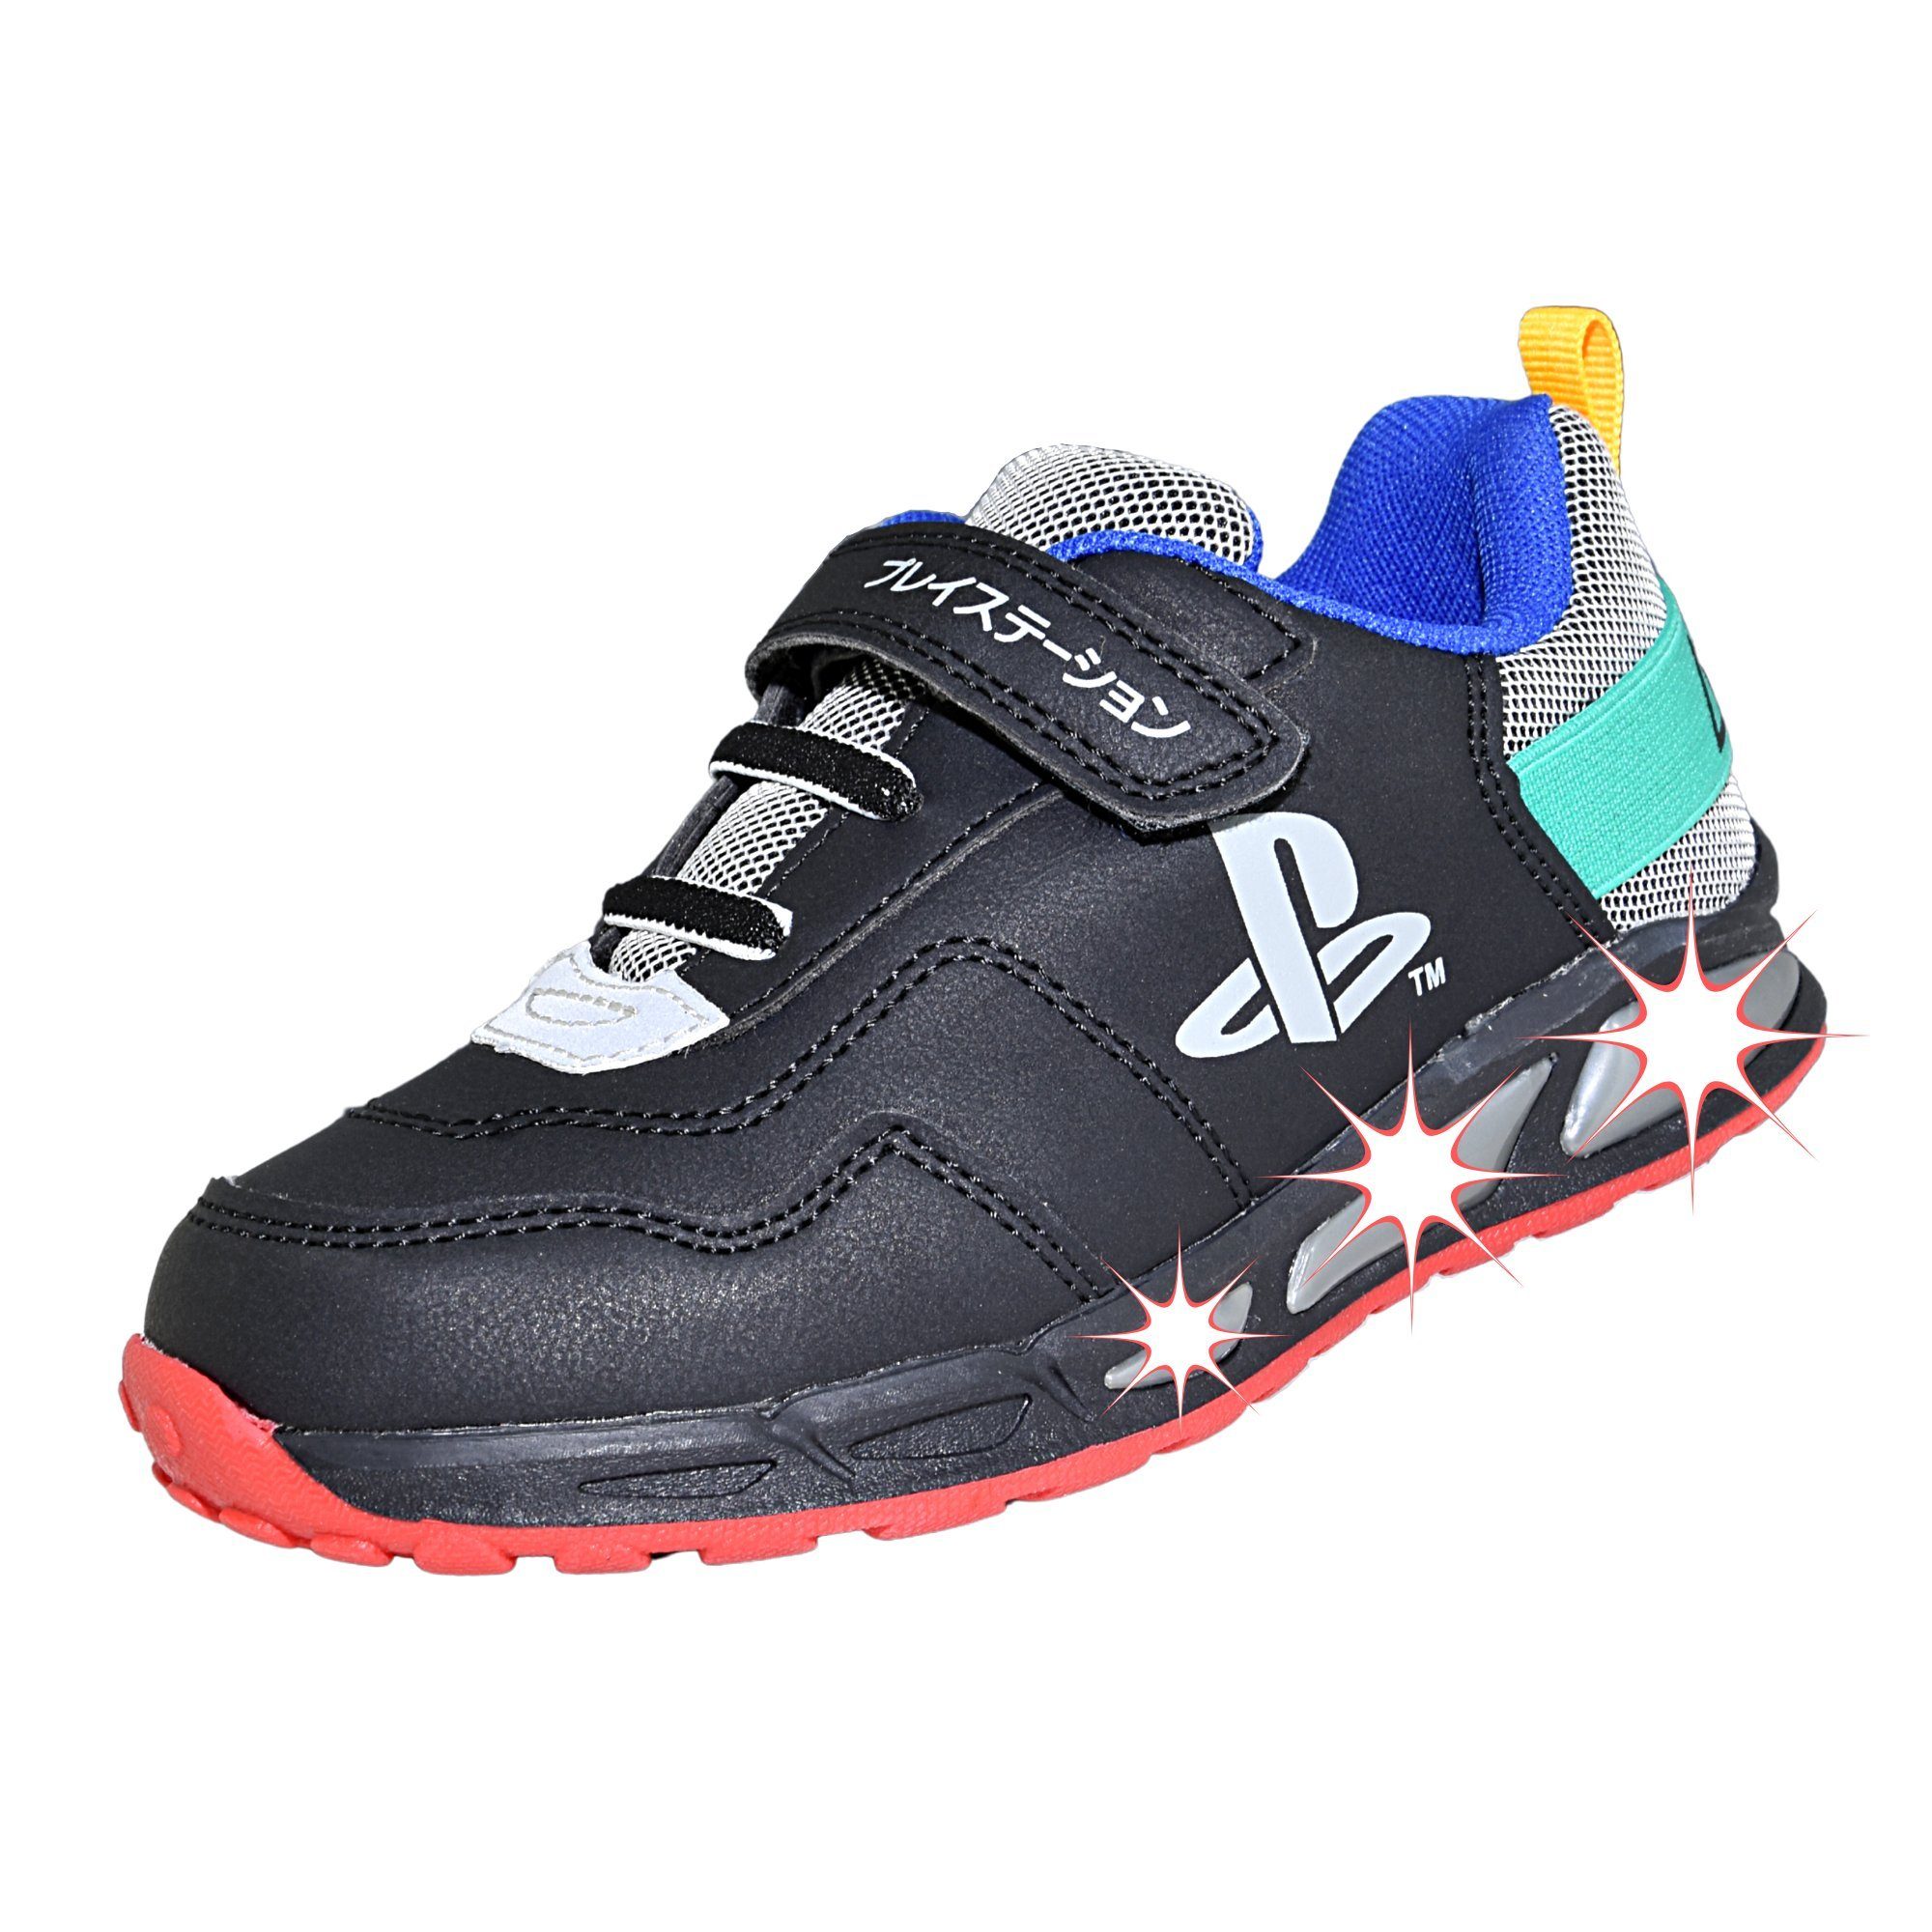 Playstation Sneaker Jungen Kinderschuhe Gr. 30 - 33 cm